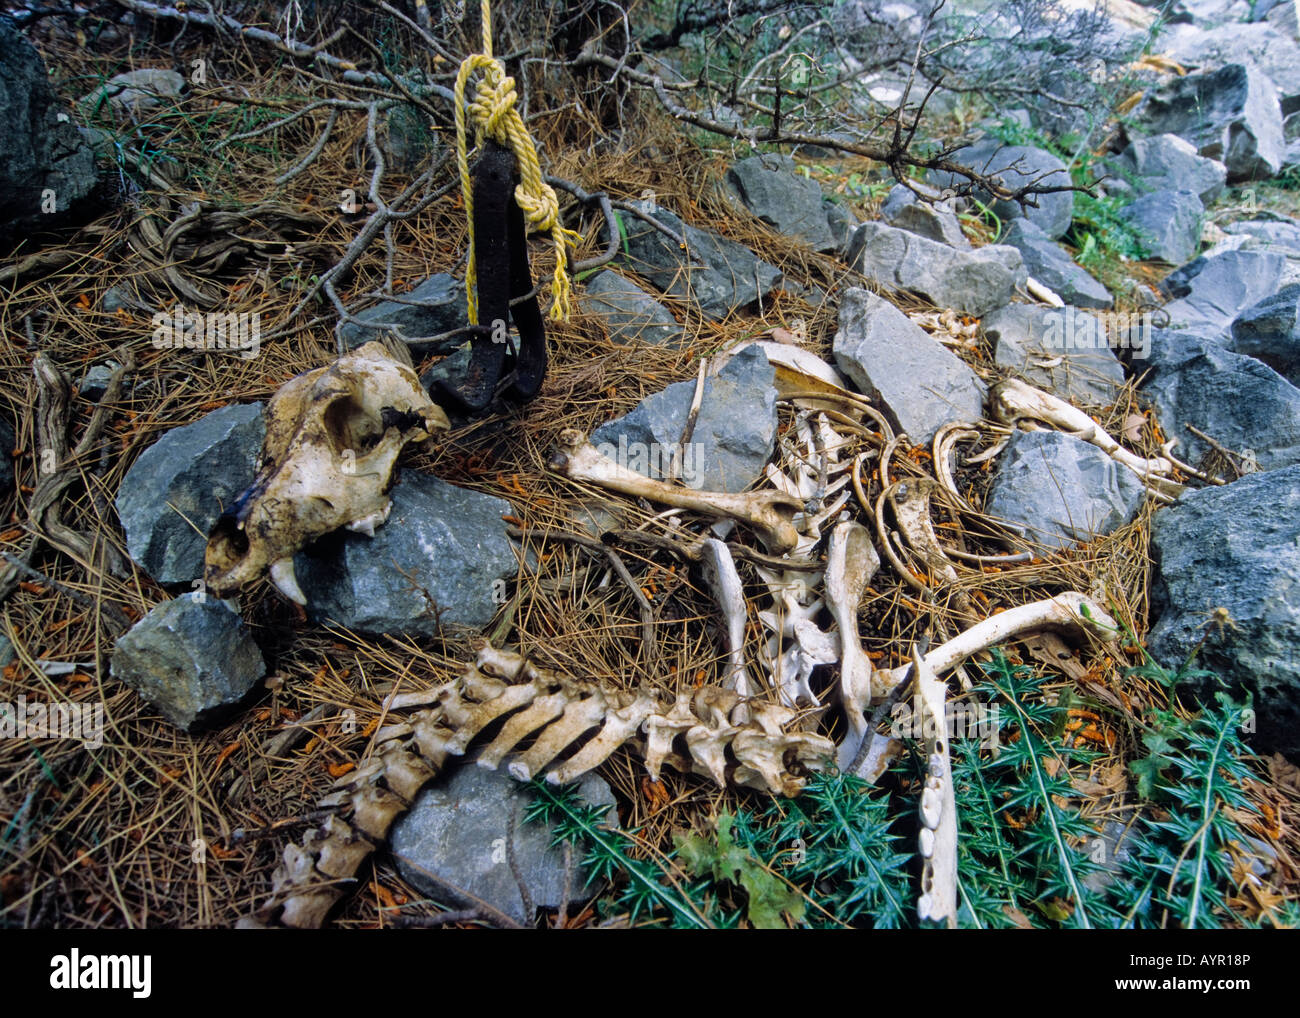 La crueldad con los animales, el esqueleto de un perro, atados y condenados a morir de inanición, Samaria Gorge, Creta, Grecia Foto de stock